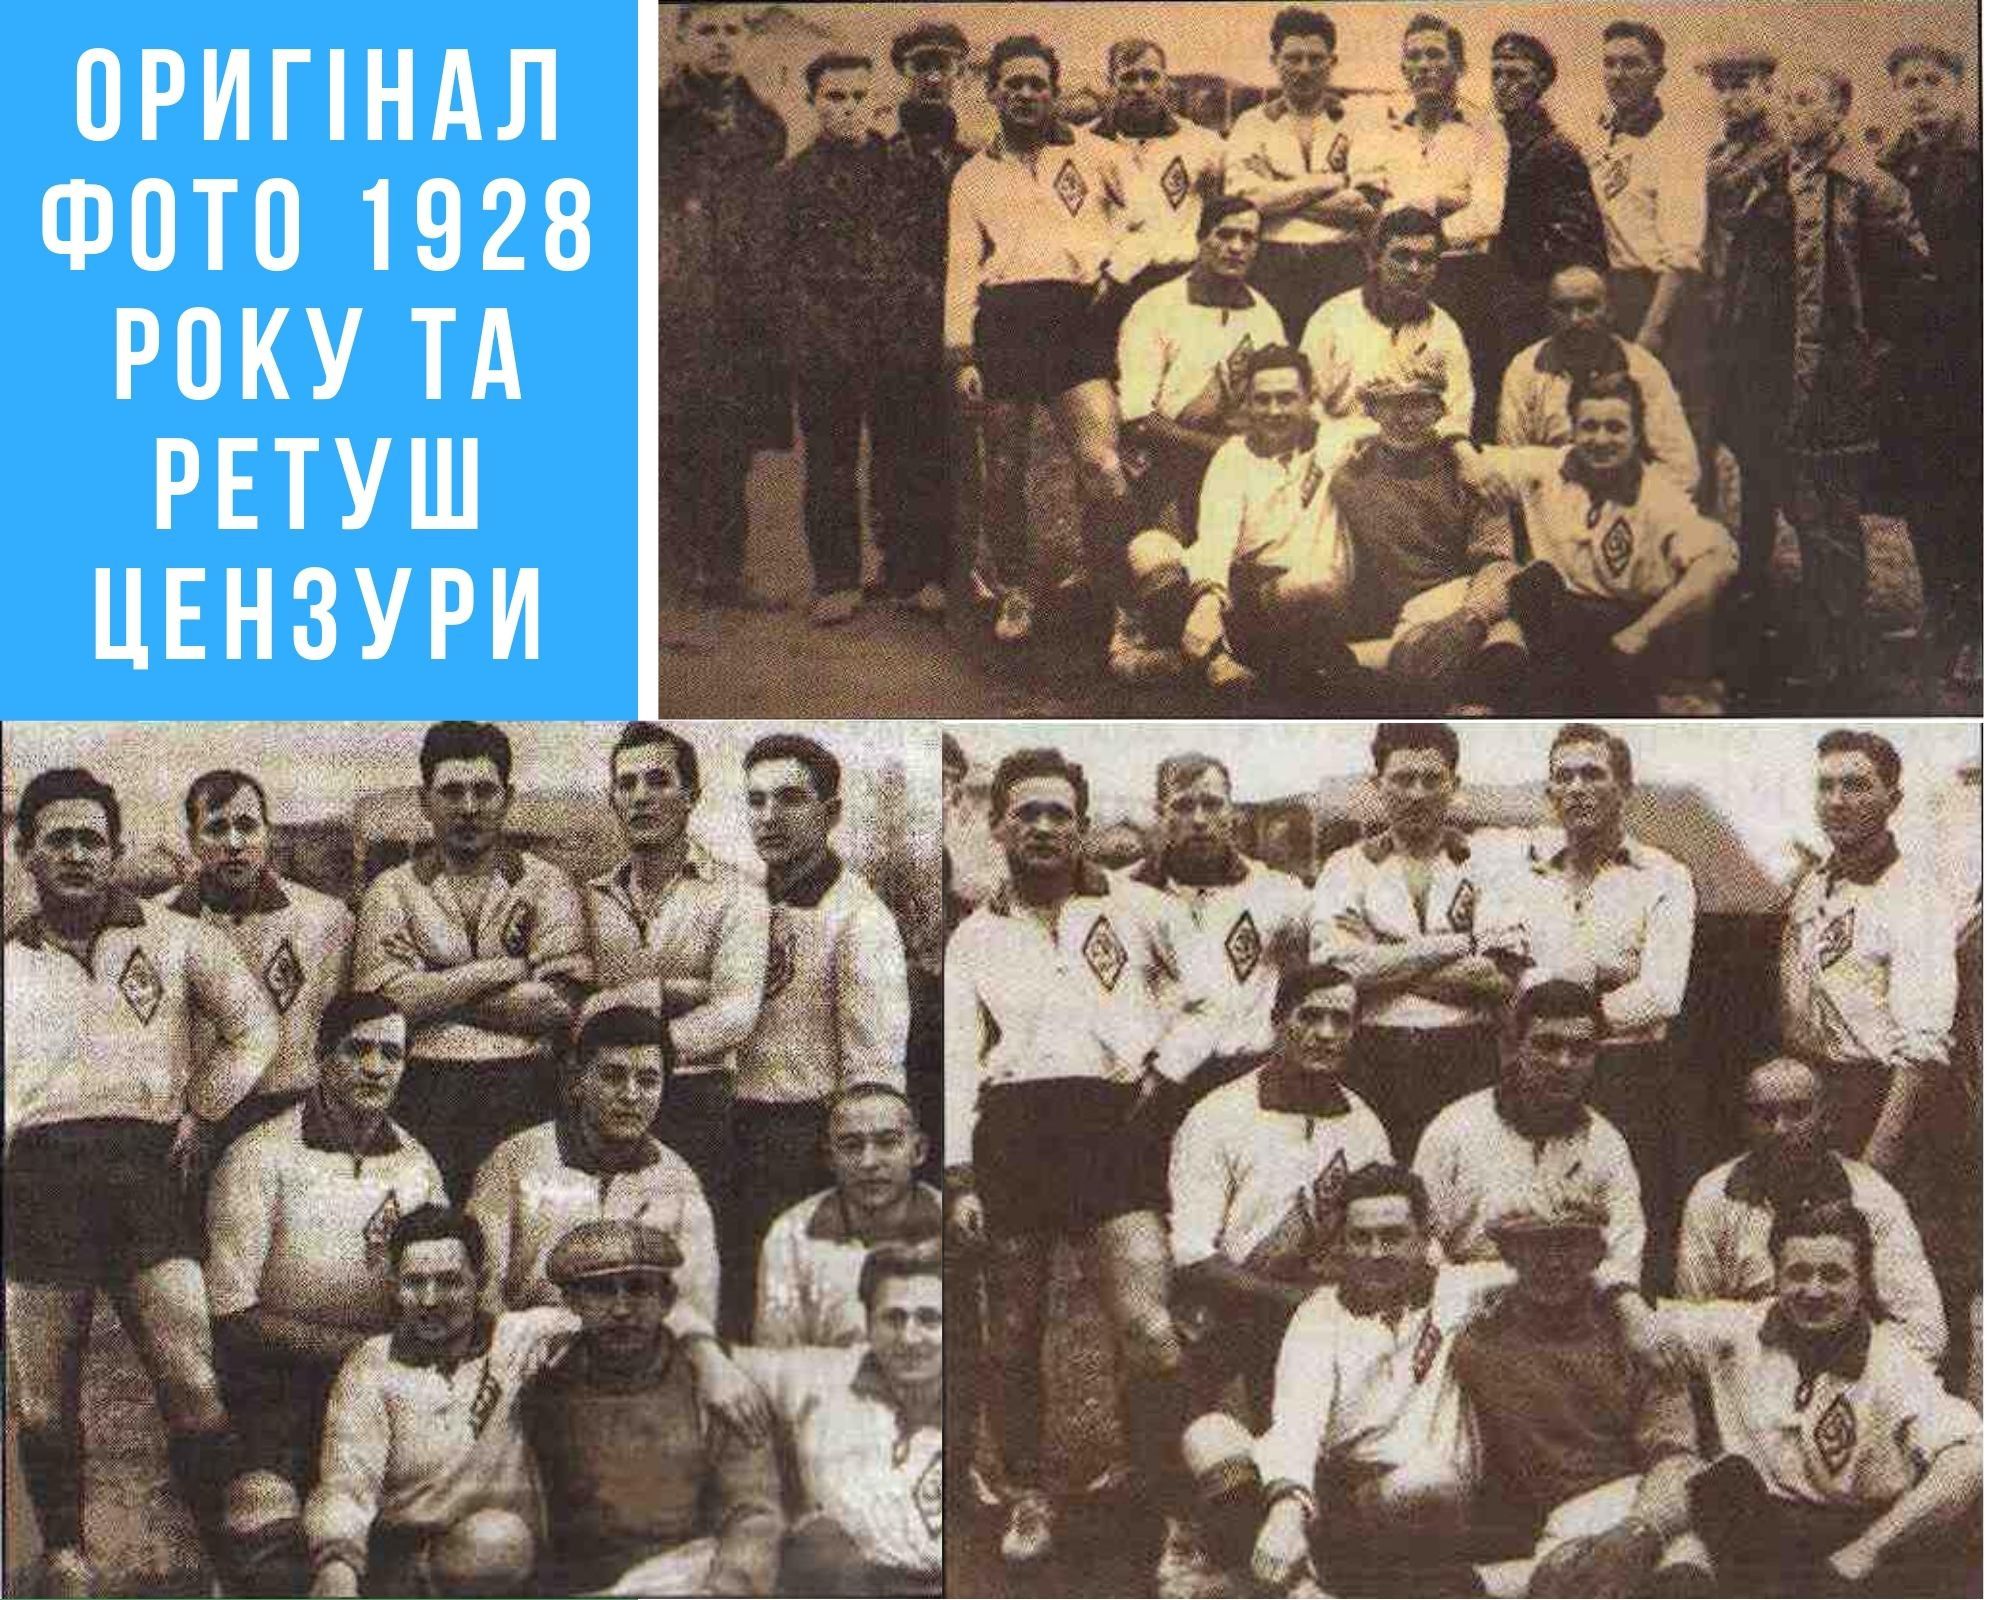 July 17 in Kyiv Dynamo history